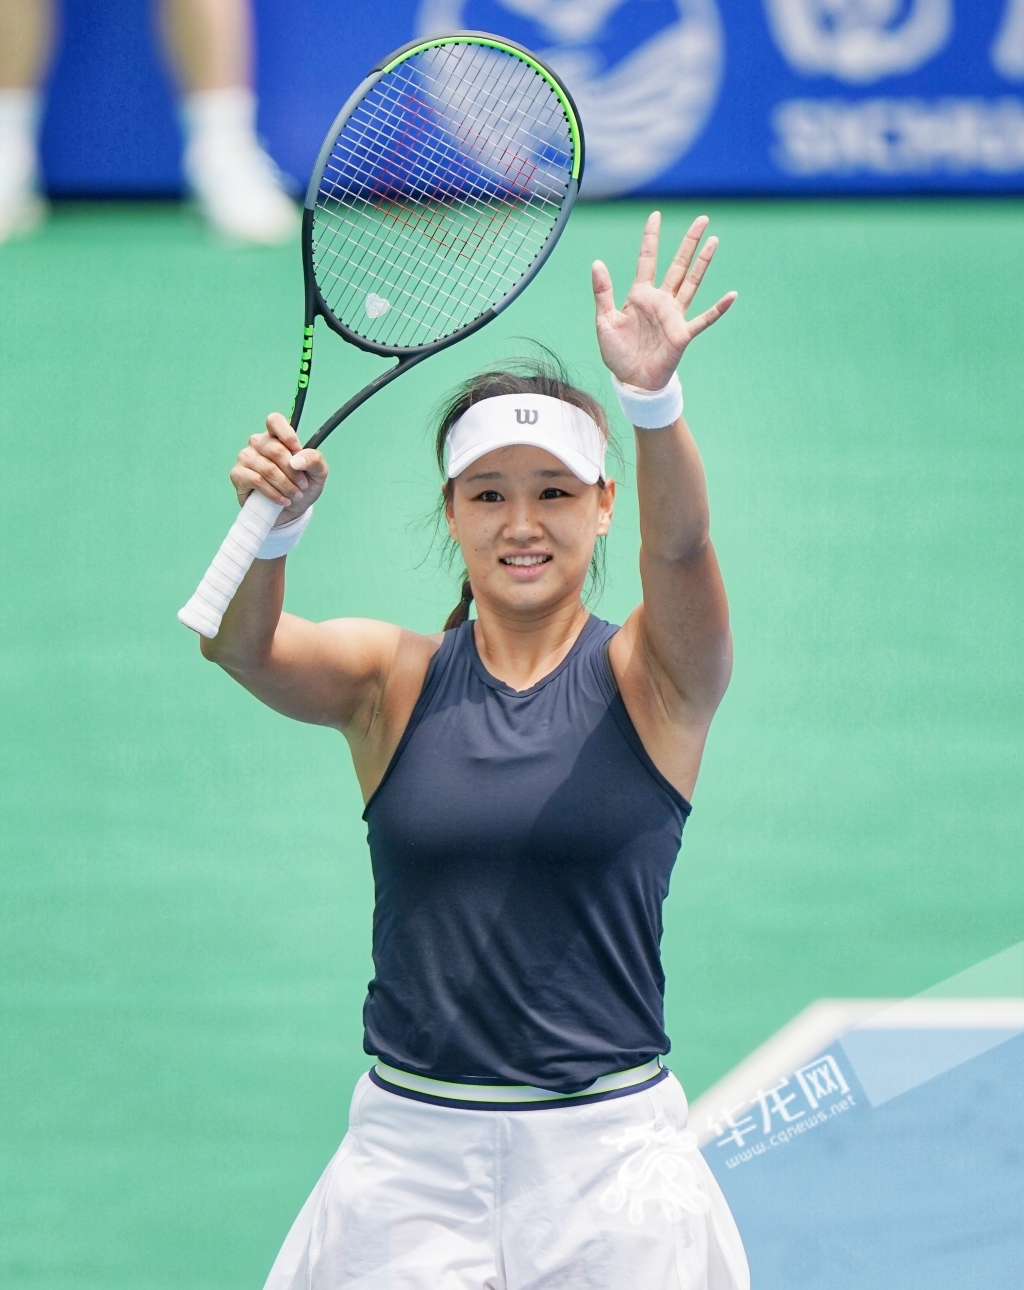 郭涵煜赢得大运会女子网球金牌。华龙网-新重庆客户端记者 张质 摄